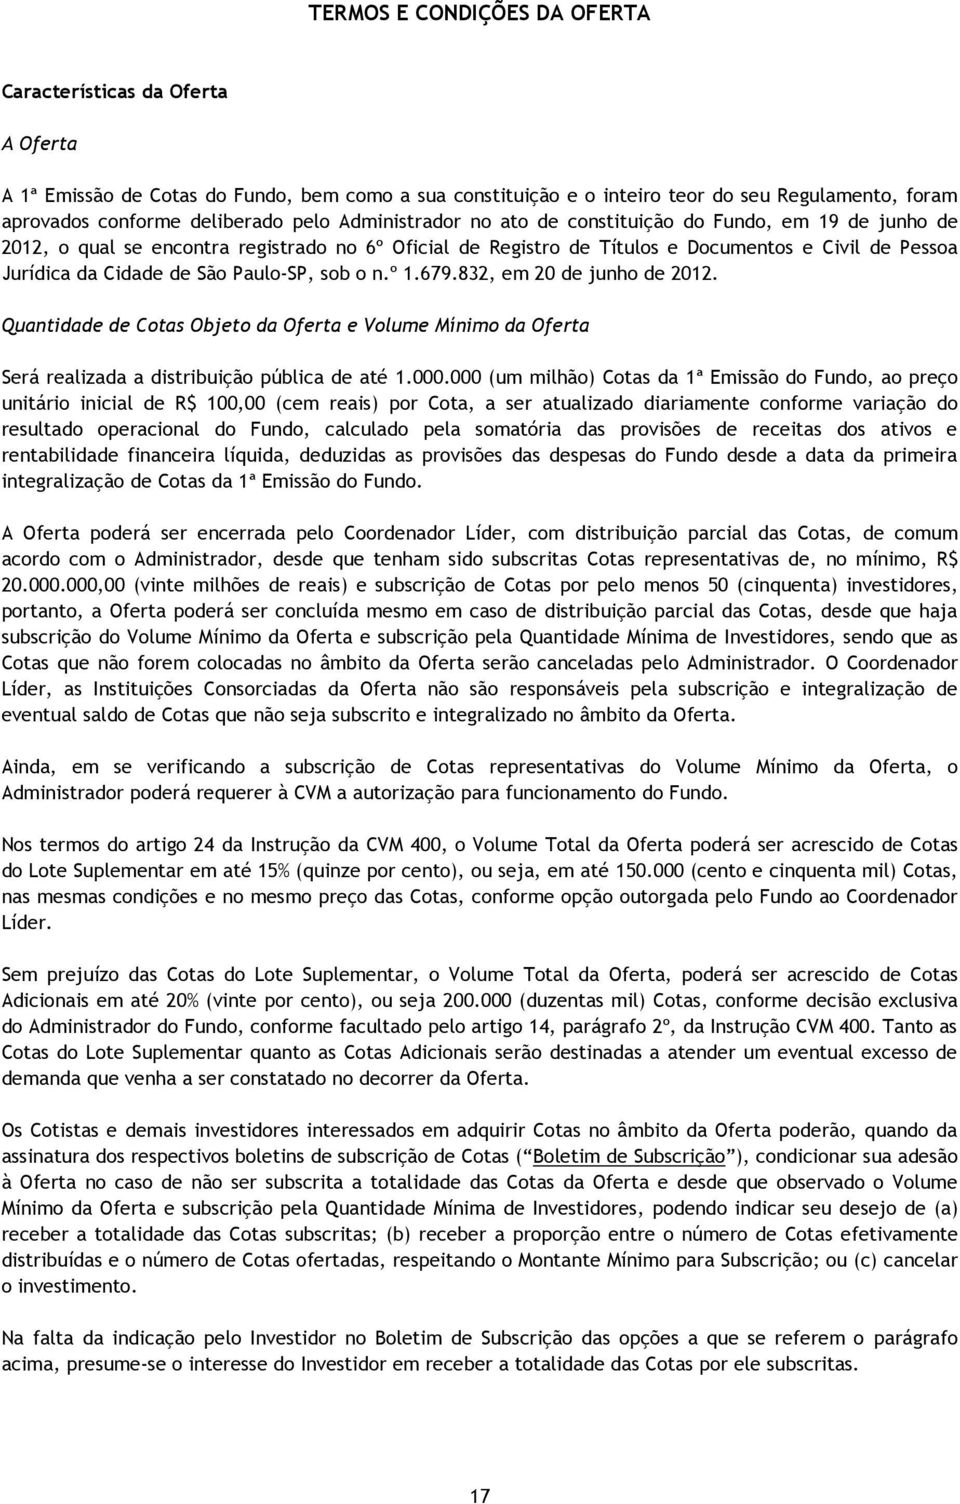 Paulo-SP, sob o n.º 1.679.832, em 20 de junho de 2012. Quantidade de Cotas Objeto da Oferta e Volume Mínimo da Oferta Será realizada a distribuição pública de até 1.000.